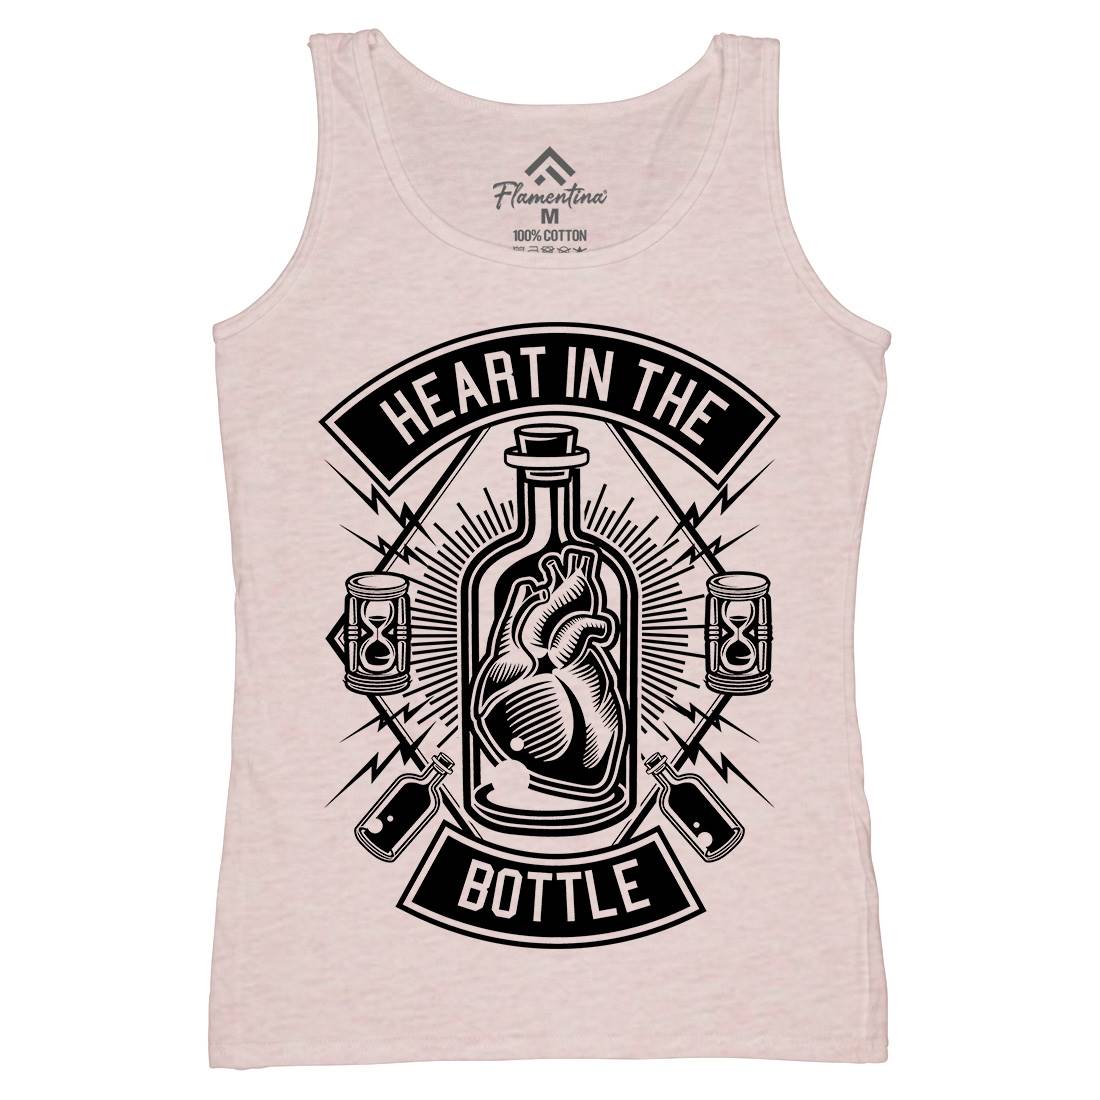 Heart In The Bottle Womens Organic Tank Top Vest Navy B552